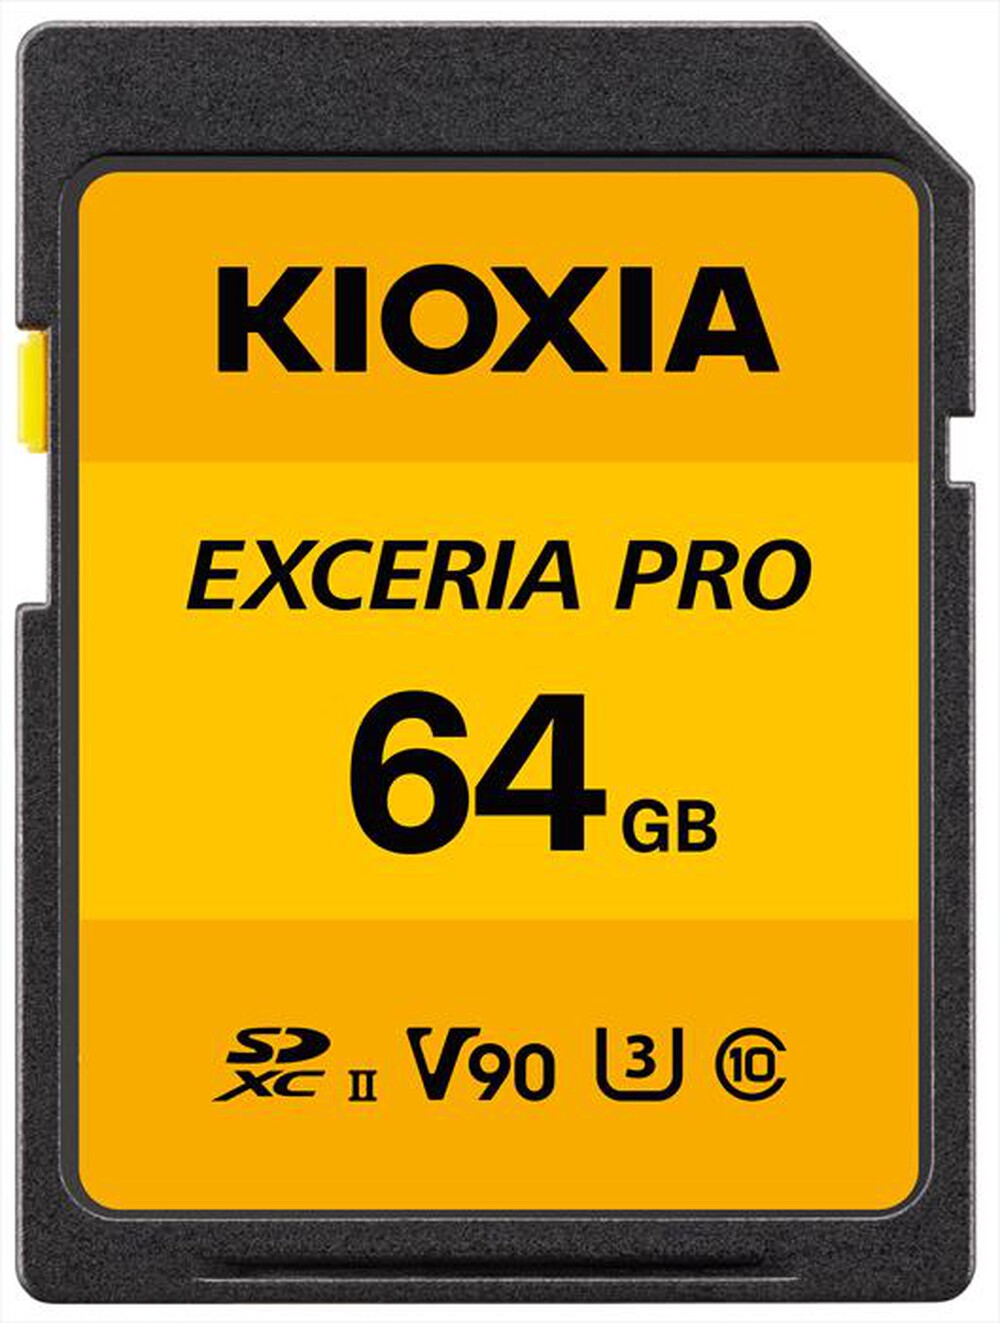 "KIOXIA - SD EXCERIA PRO NPR1 UHS-II 64GB-Giallo"